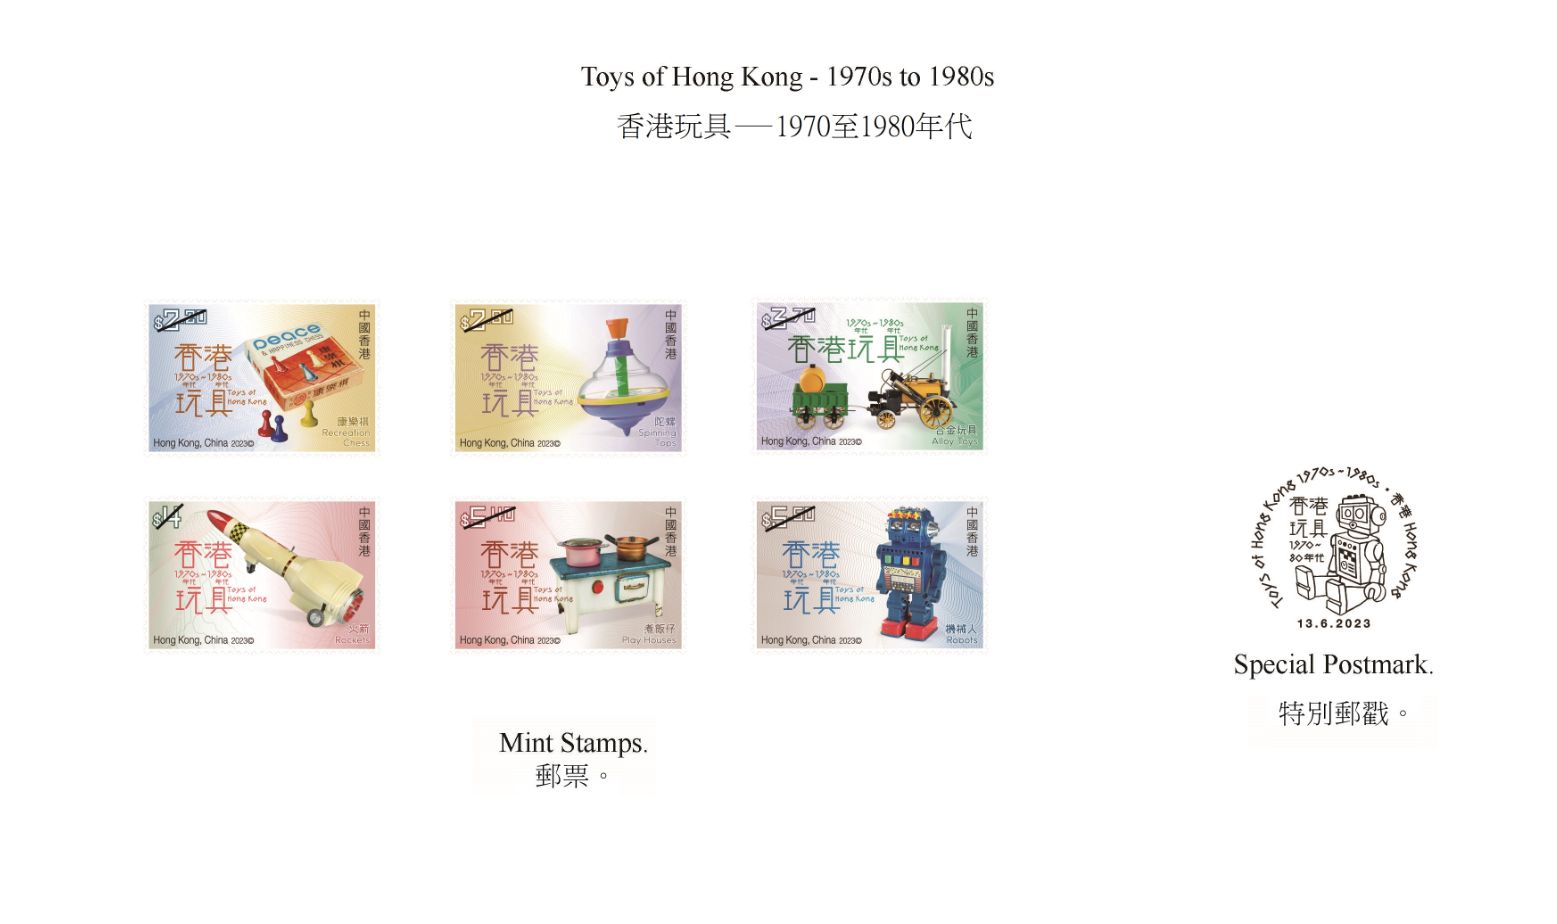 “香港玩具―1970至1980年代”特别邮票及邮戳。（香港邮政供图）